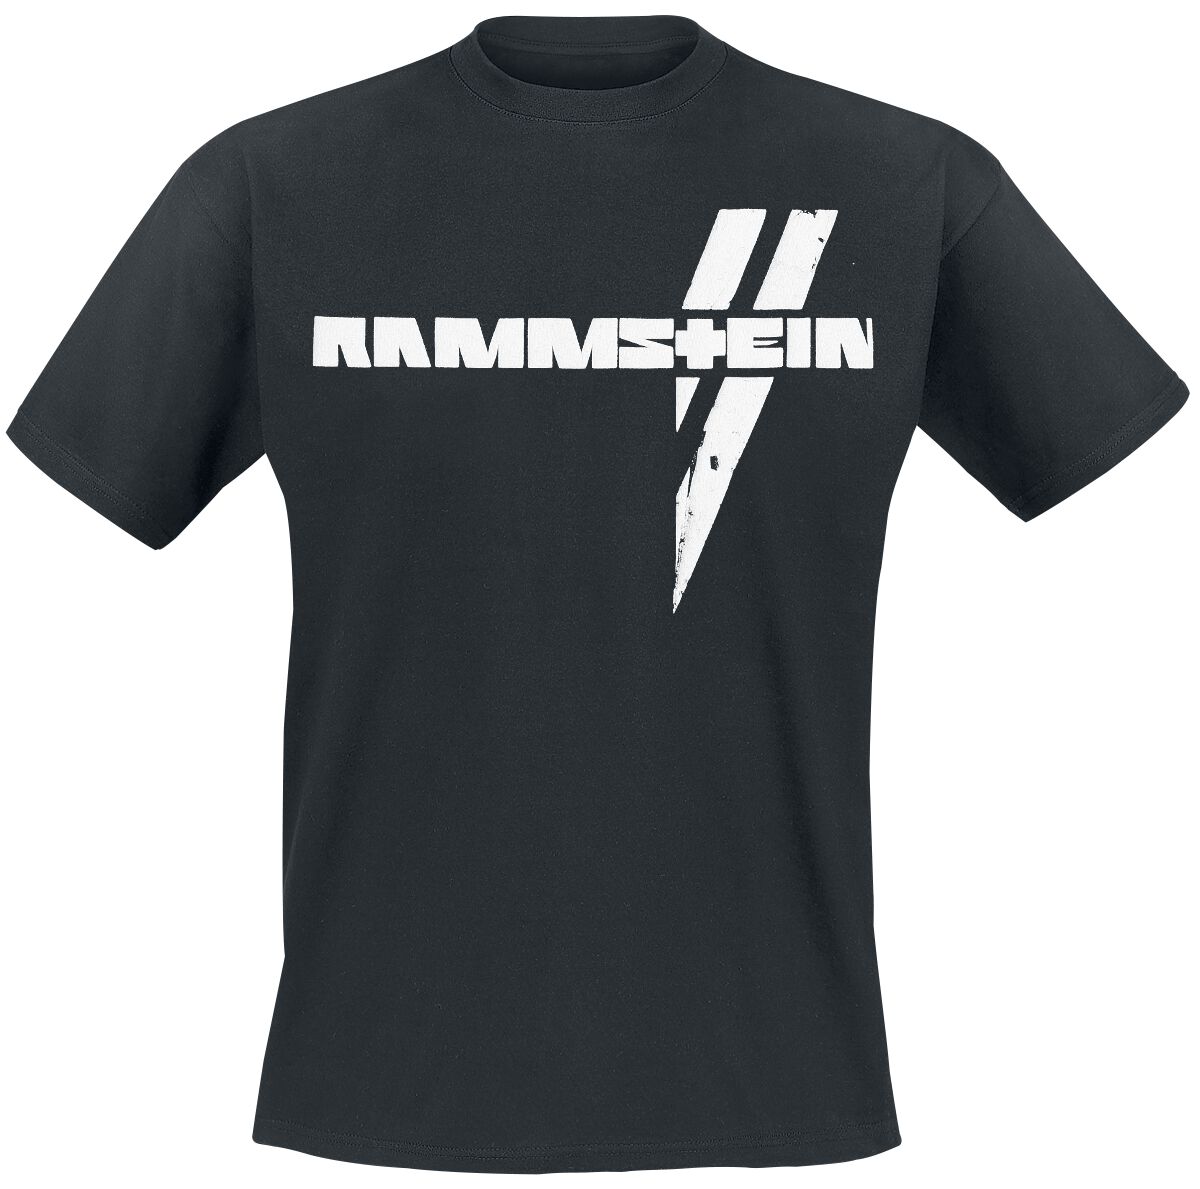 Rammstein T-Shirt - Weiße Balken - S bis 5XL - für Männer - Größe 3XL - schwarz  - Lizenziertes Merchandise!